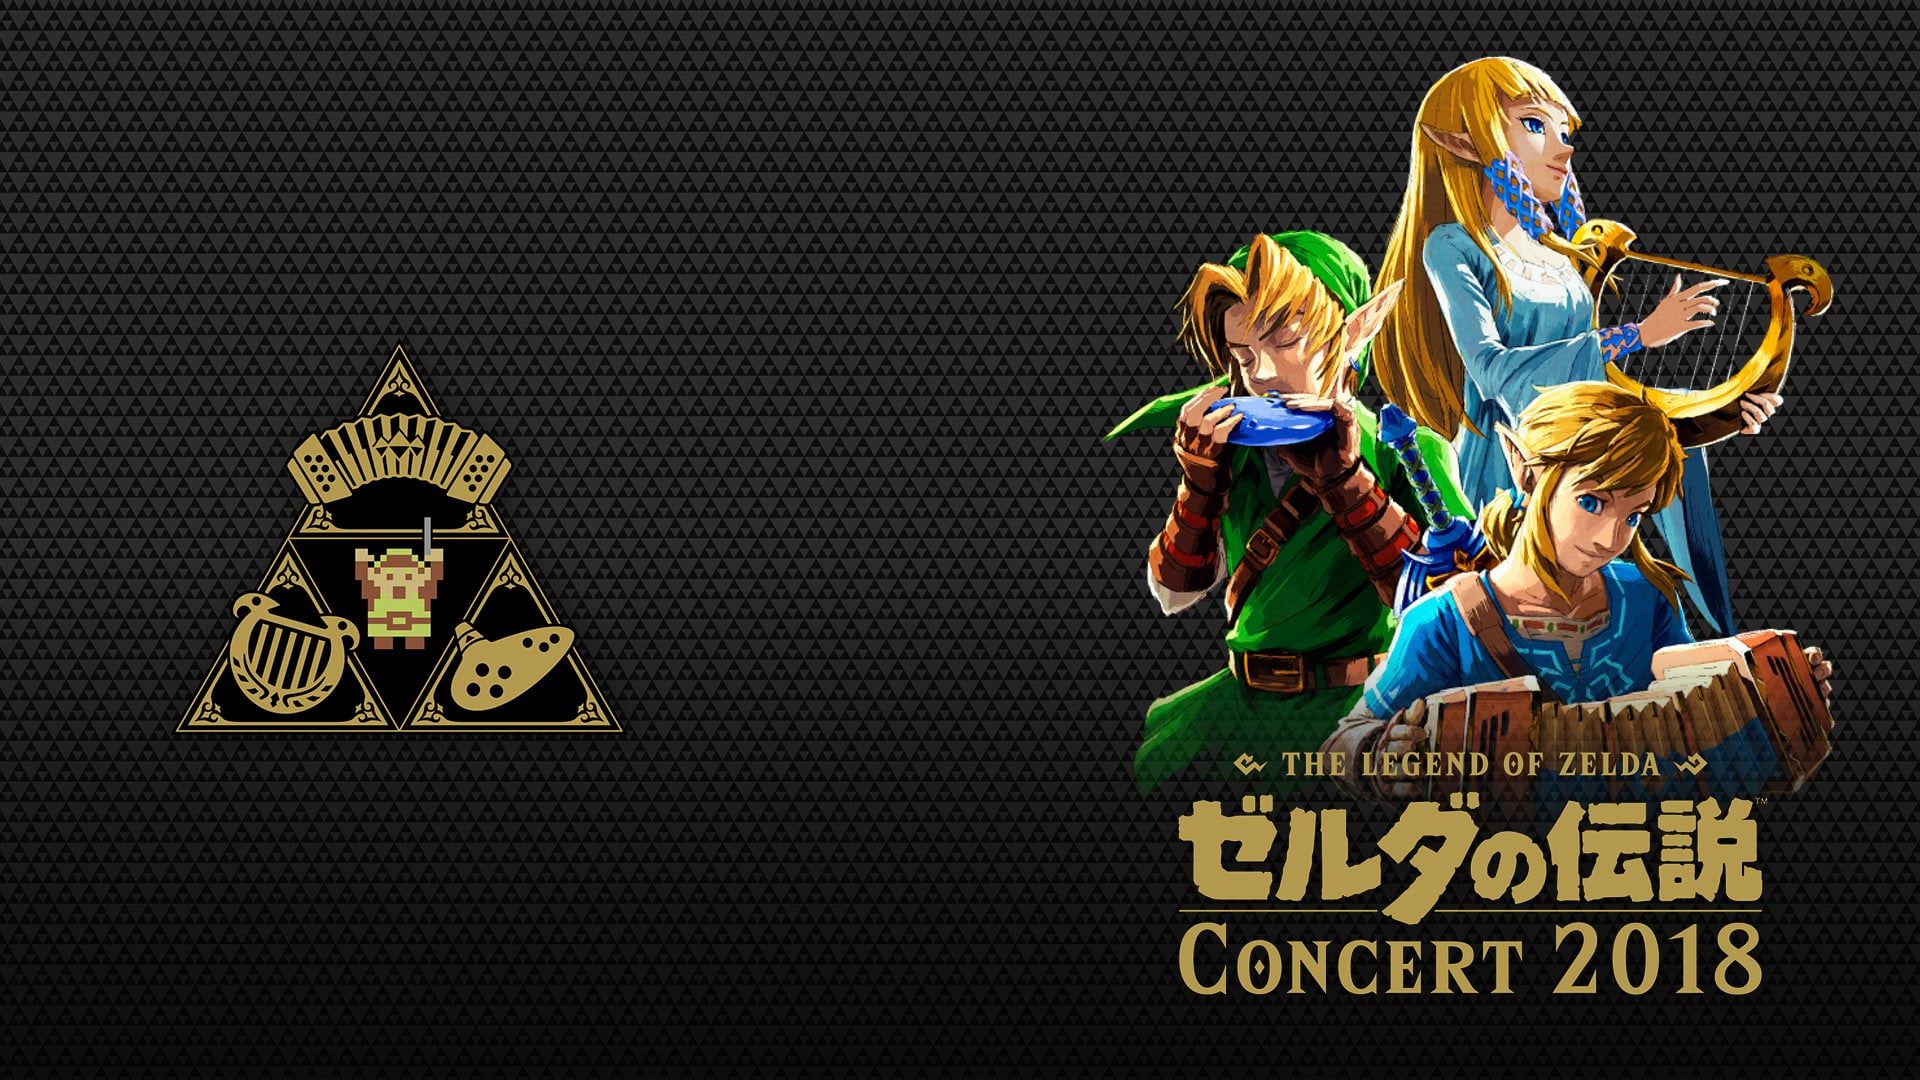 Cubierta de The Legend of Zelda Concert 2018